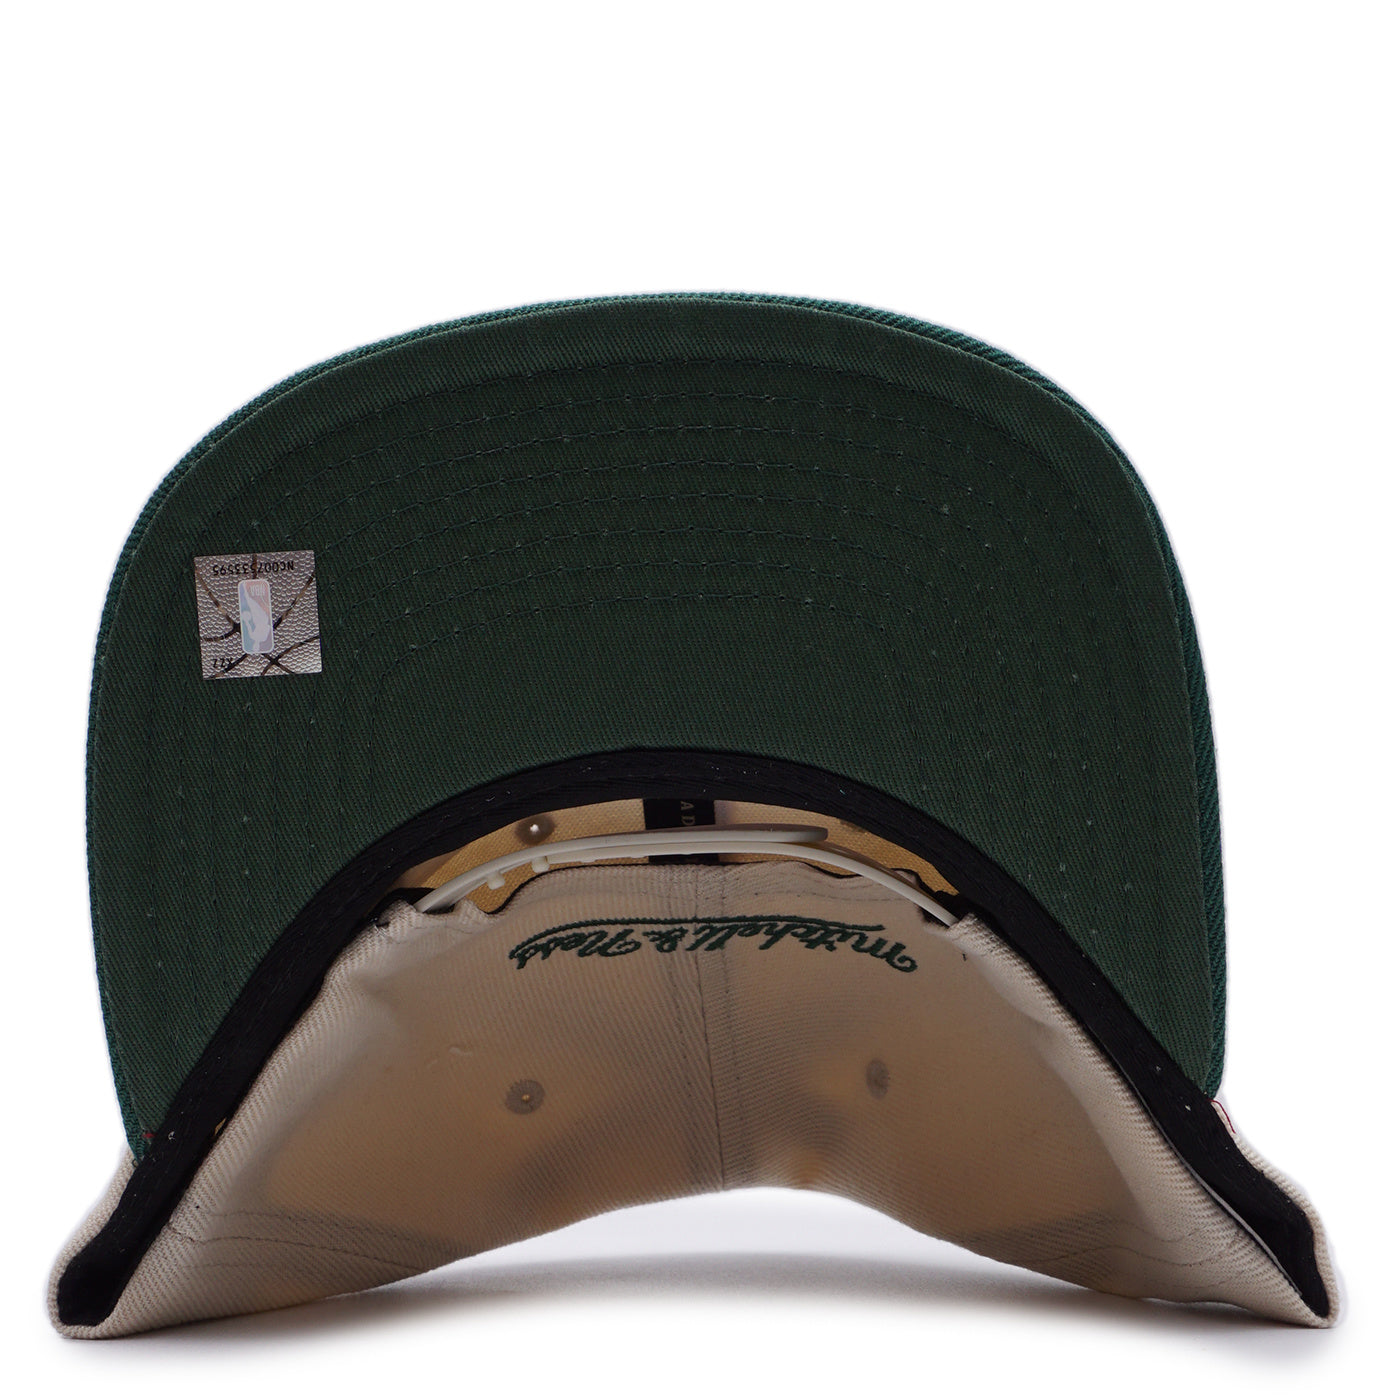 Men's Milwaukee Bucks Mitchell & Ness Core Cream/Green Snapback Hat